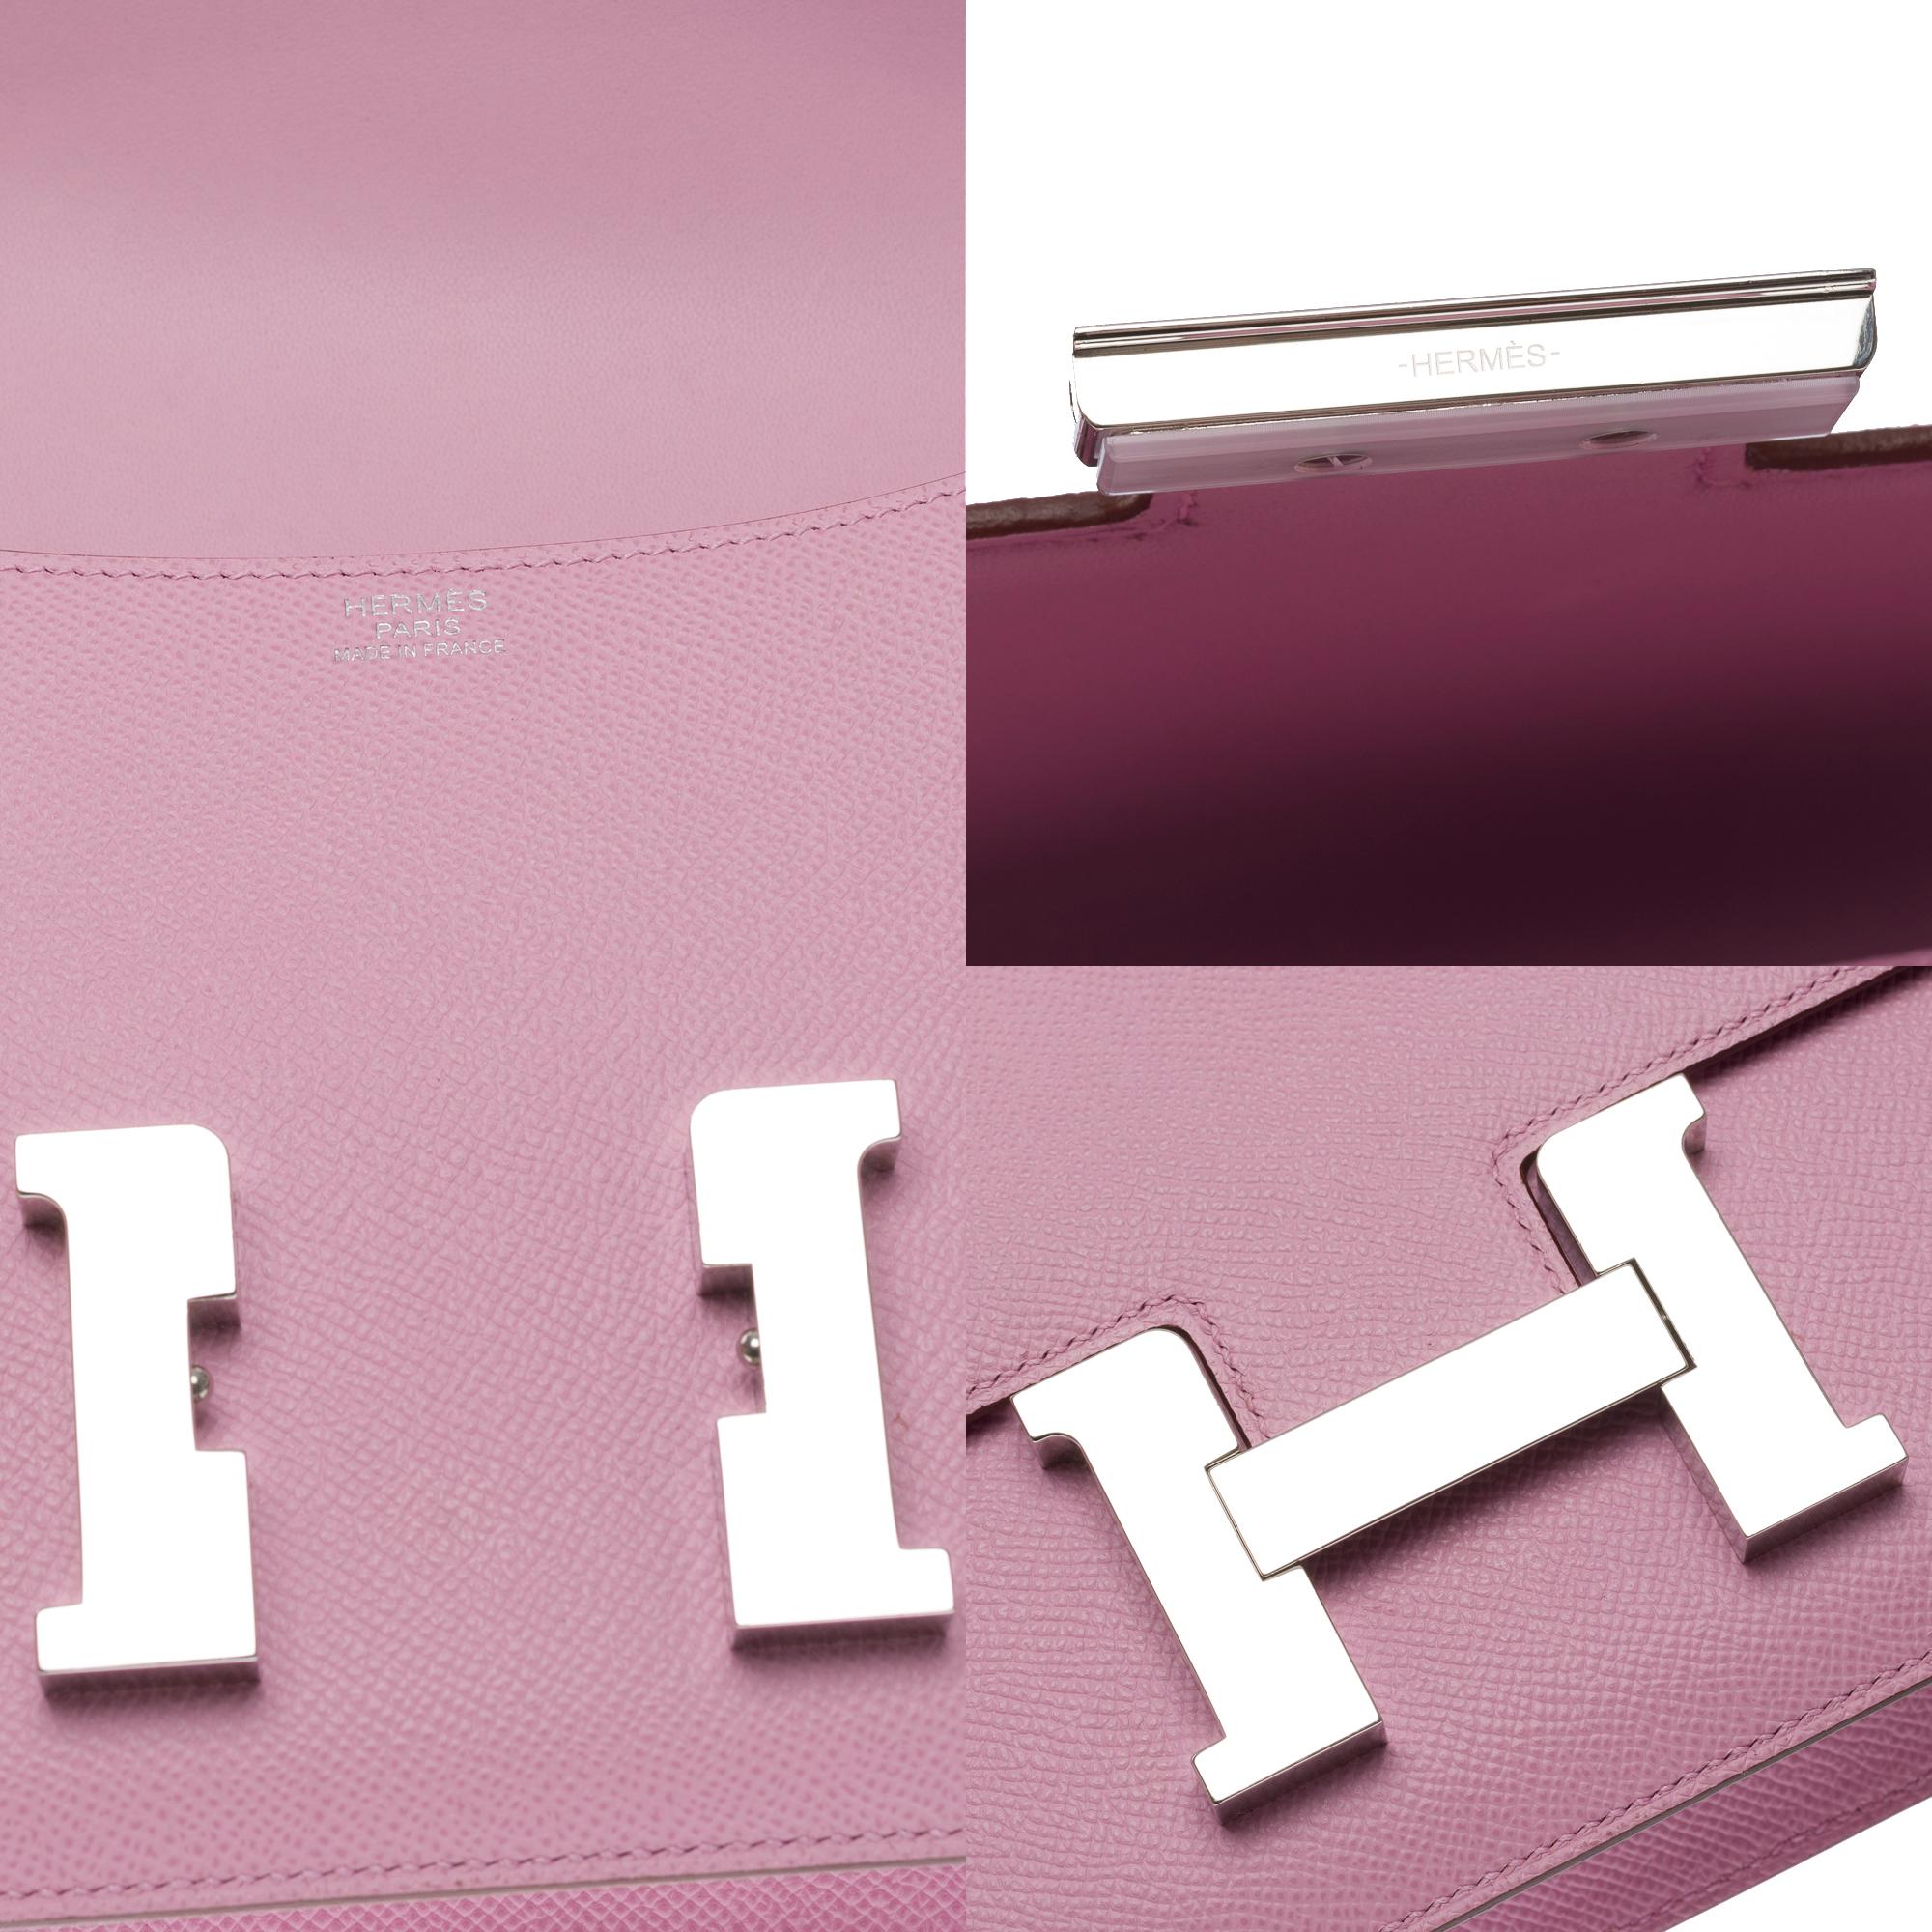 Hermès Constance 23 Mirror shoulder bag in Mauve Sylvestre Epsom leather , SHW 1